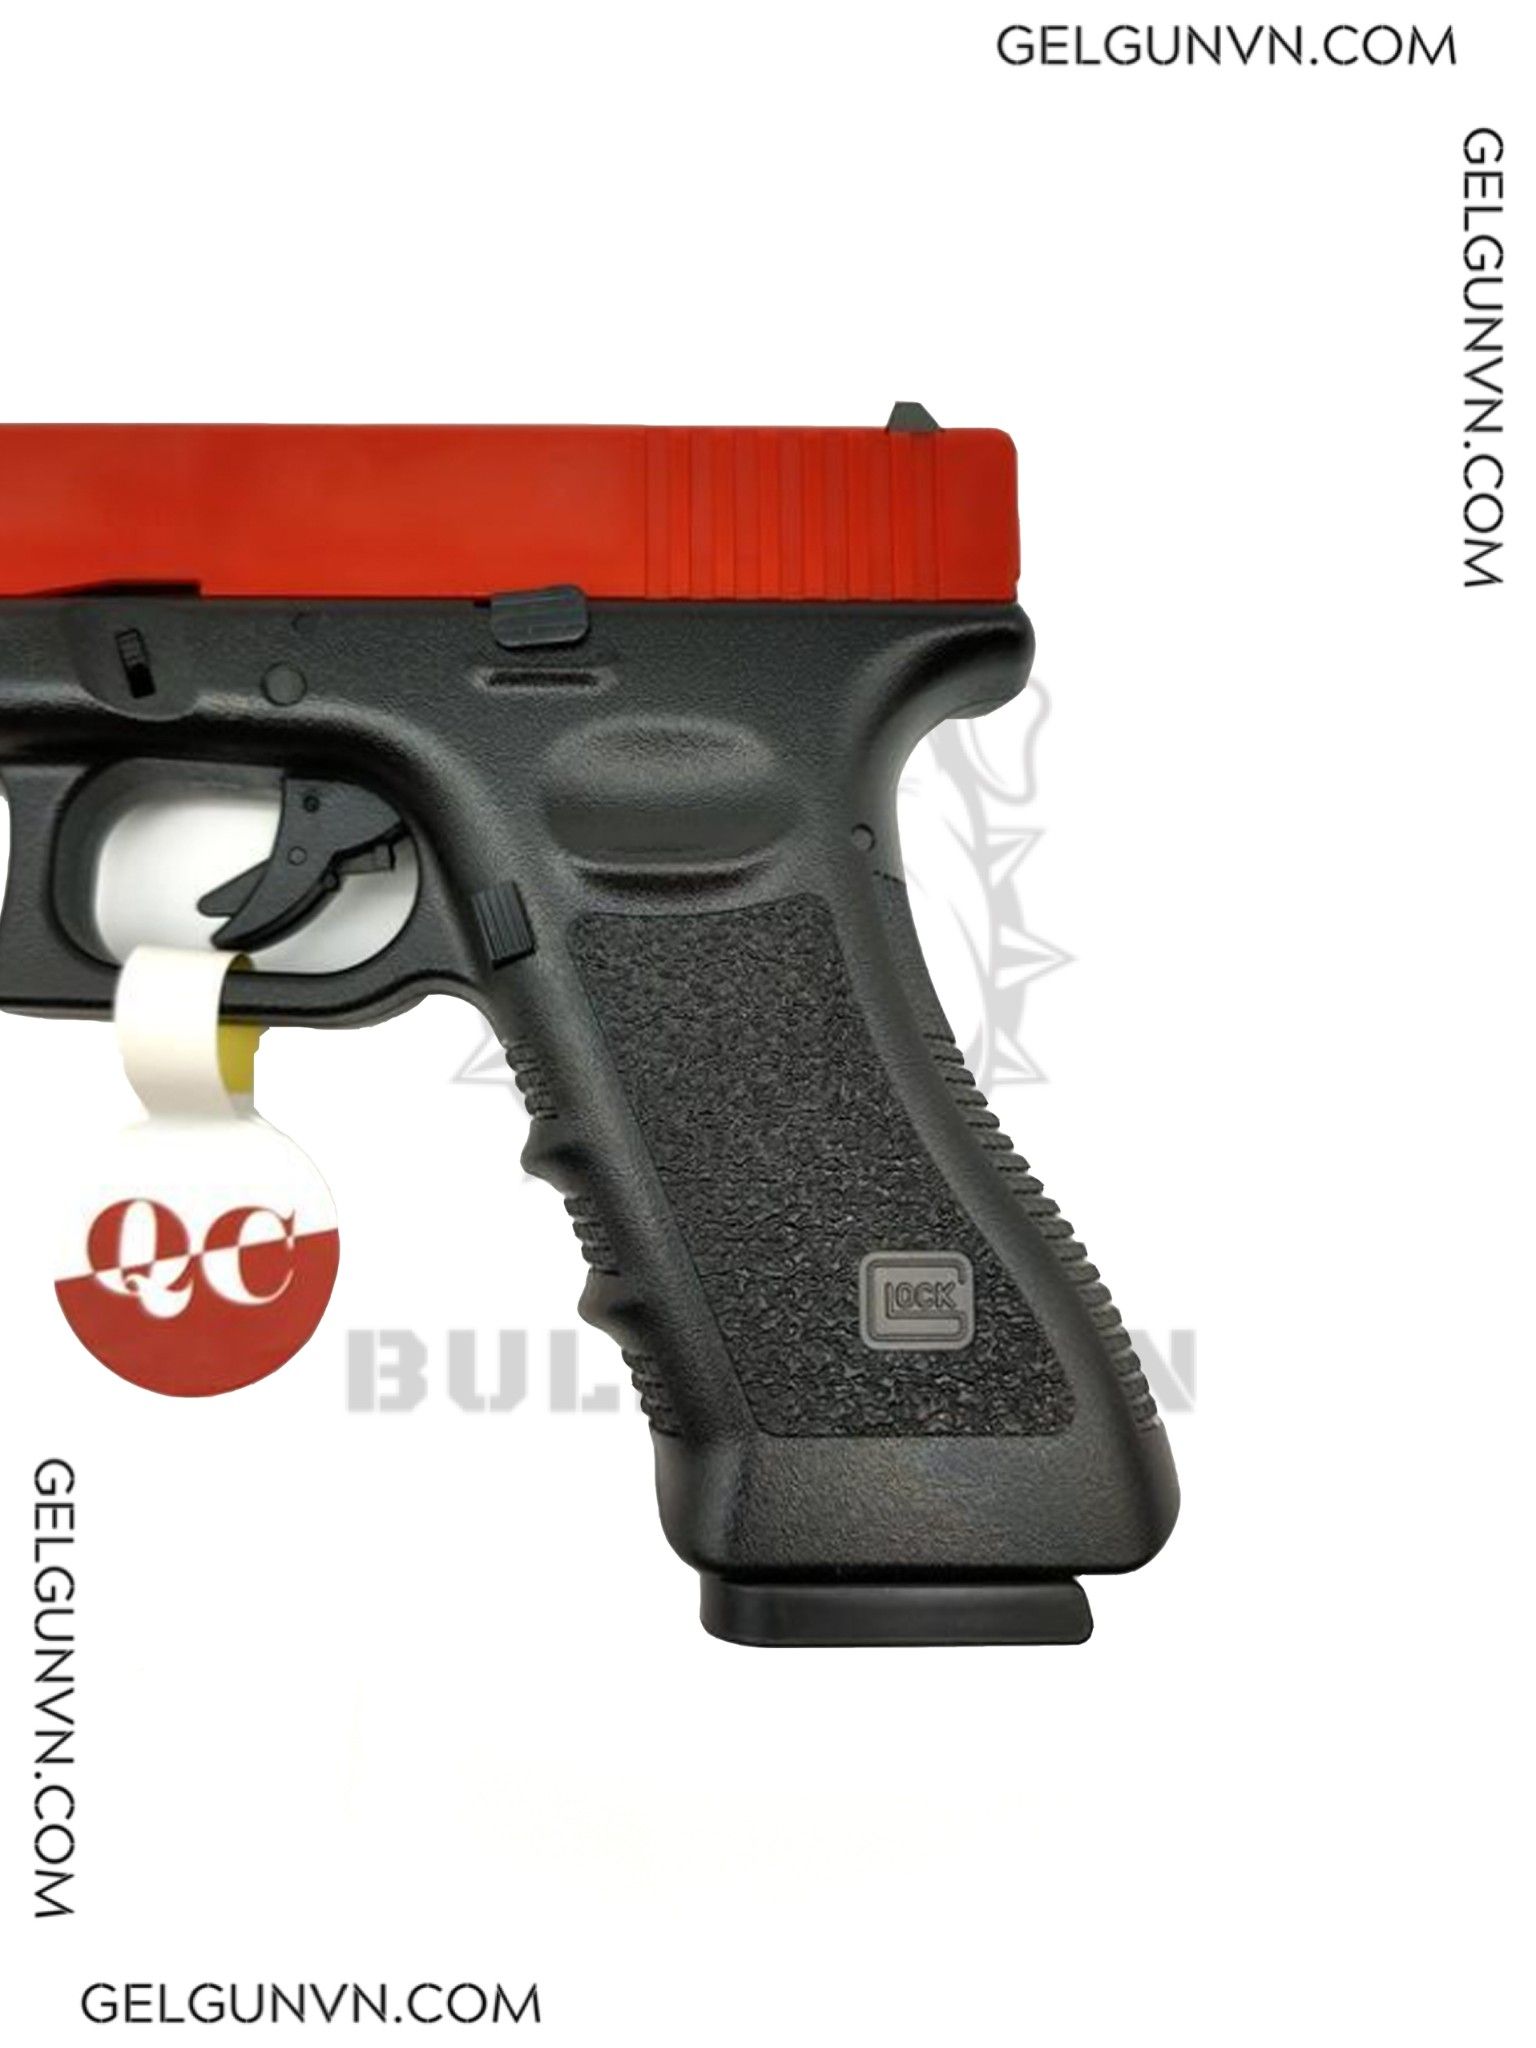  Súng Đạn Thạch Kublai P1 - Glock 17 , blow back gas - Có Sẵn Hàng 